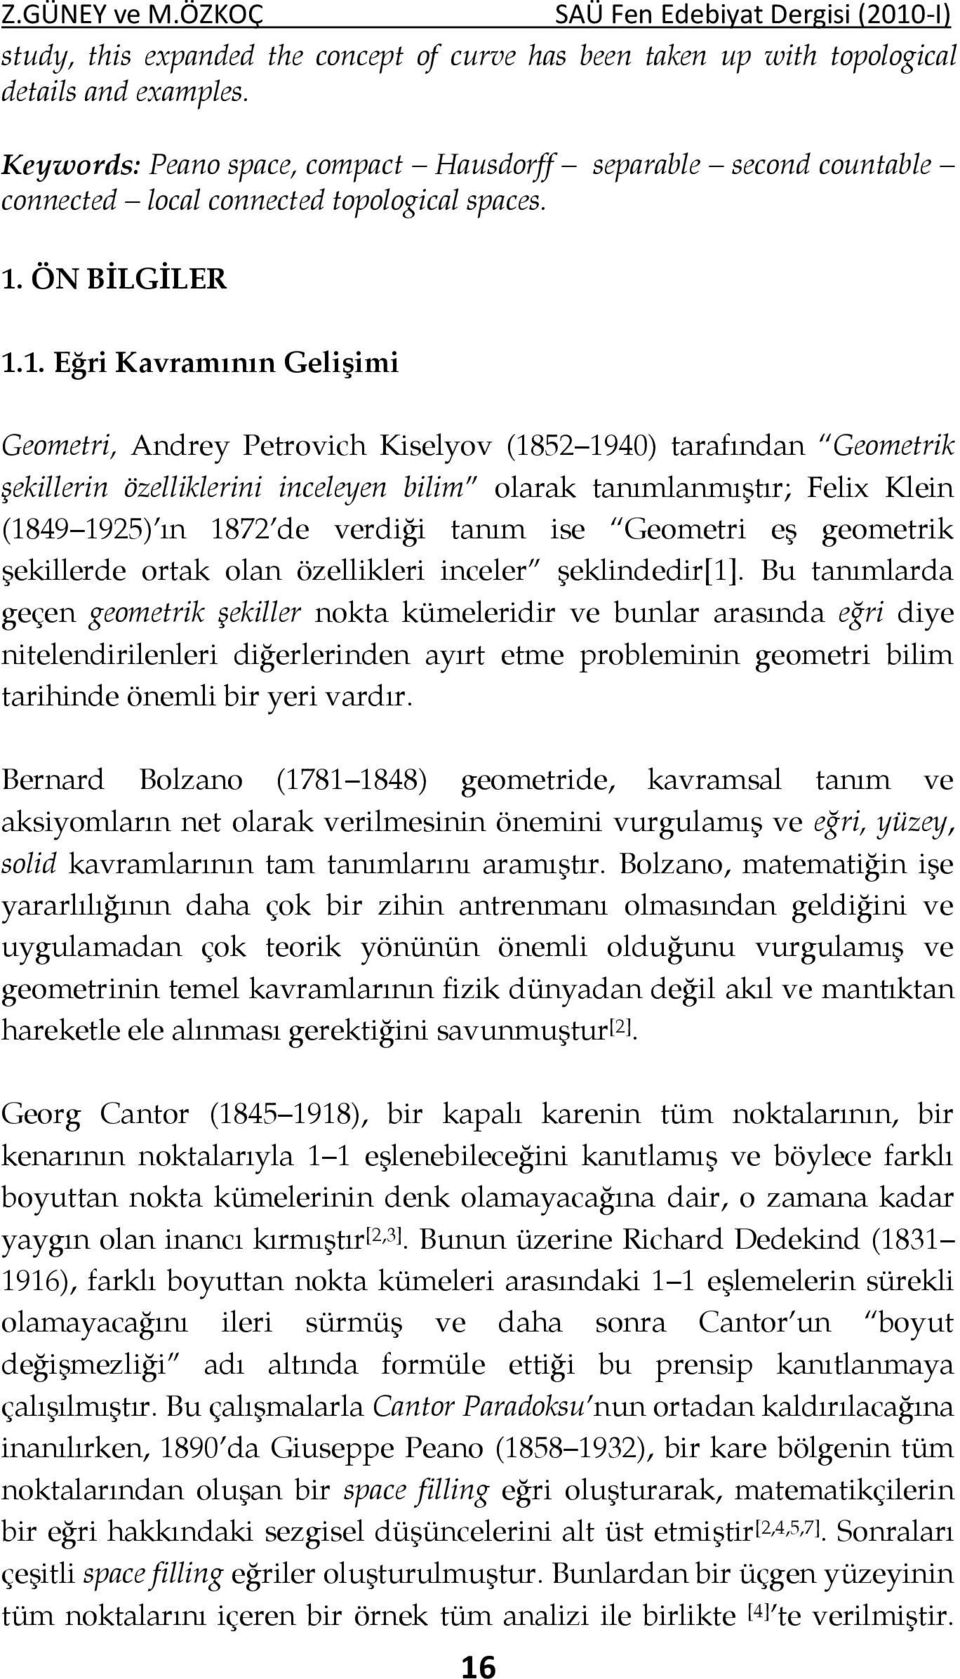 . Eğri Kavramıı Gelişimi Geometri, Adrey Petrovich Kiselyov (85 94) tarafıda Geometrik şekilleri özelliklerii iceleye bilim olarak taımlamıştır; Felix Klei (849 95) ı 87 de verdiği taım ise Geometri